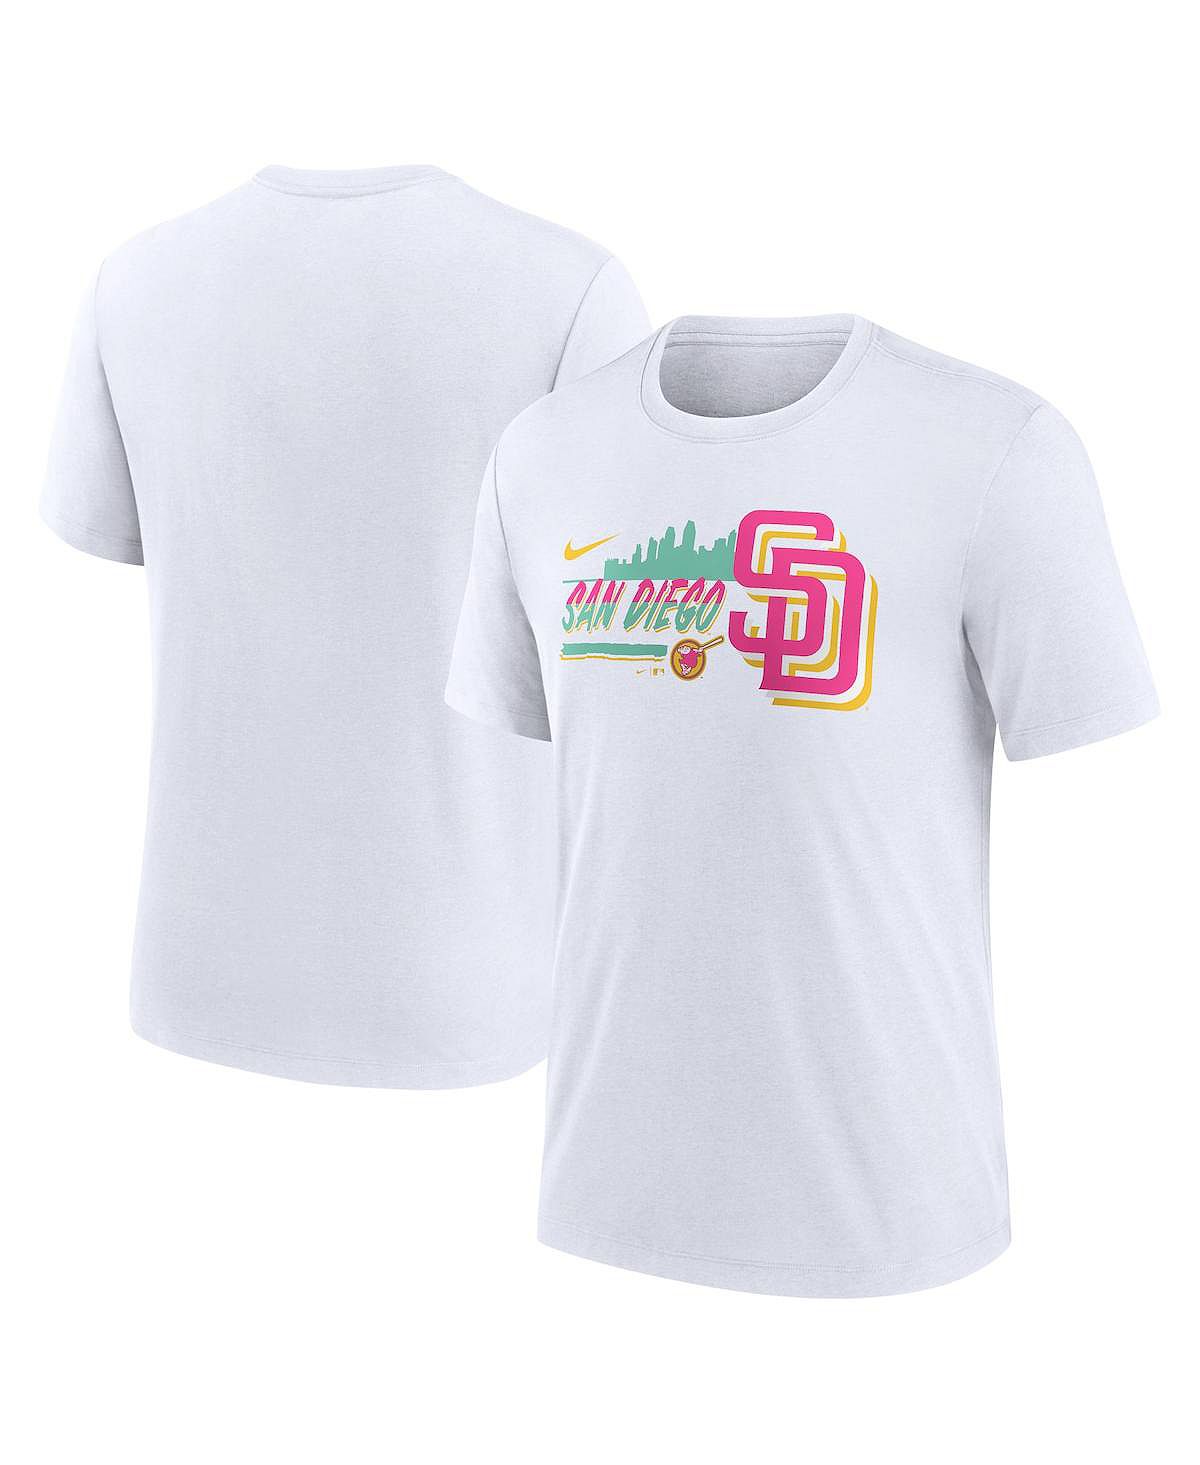 Мужская футболка San Diego Padres City Connect Tri-Blend Nike джинсы dear john frankie jeans in san diego цвет san diego